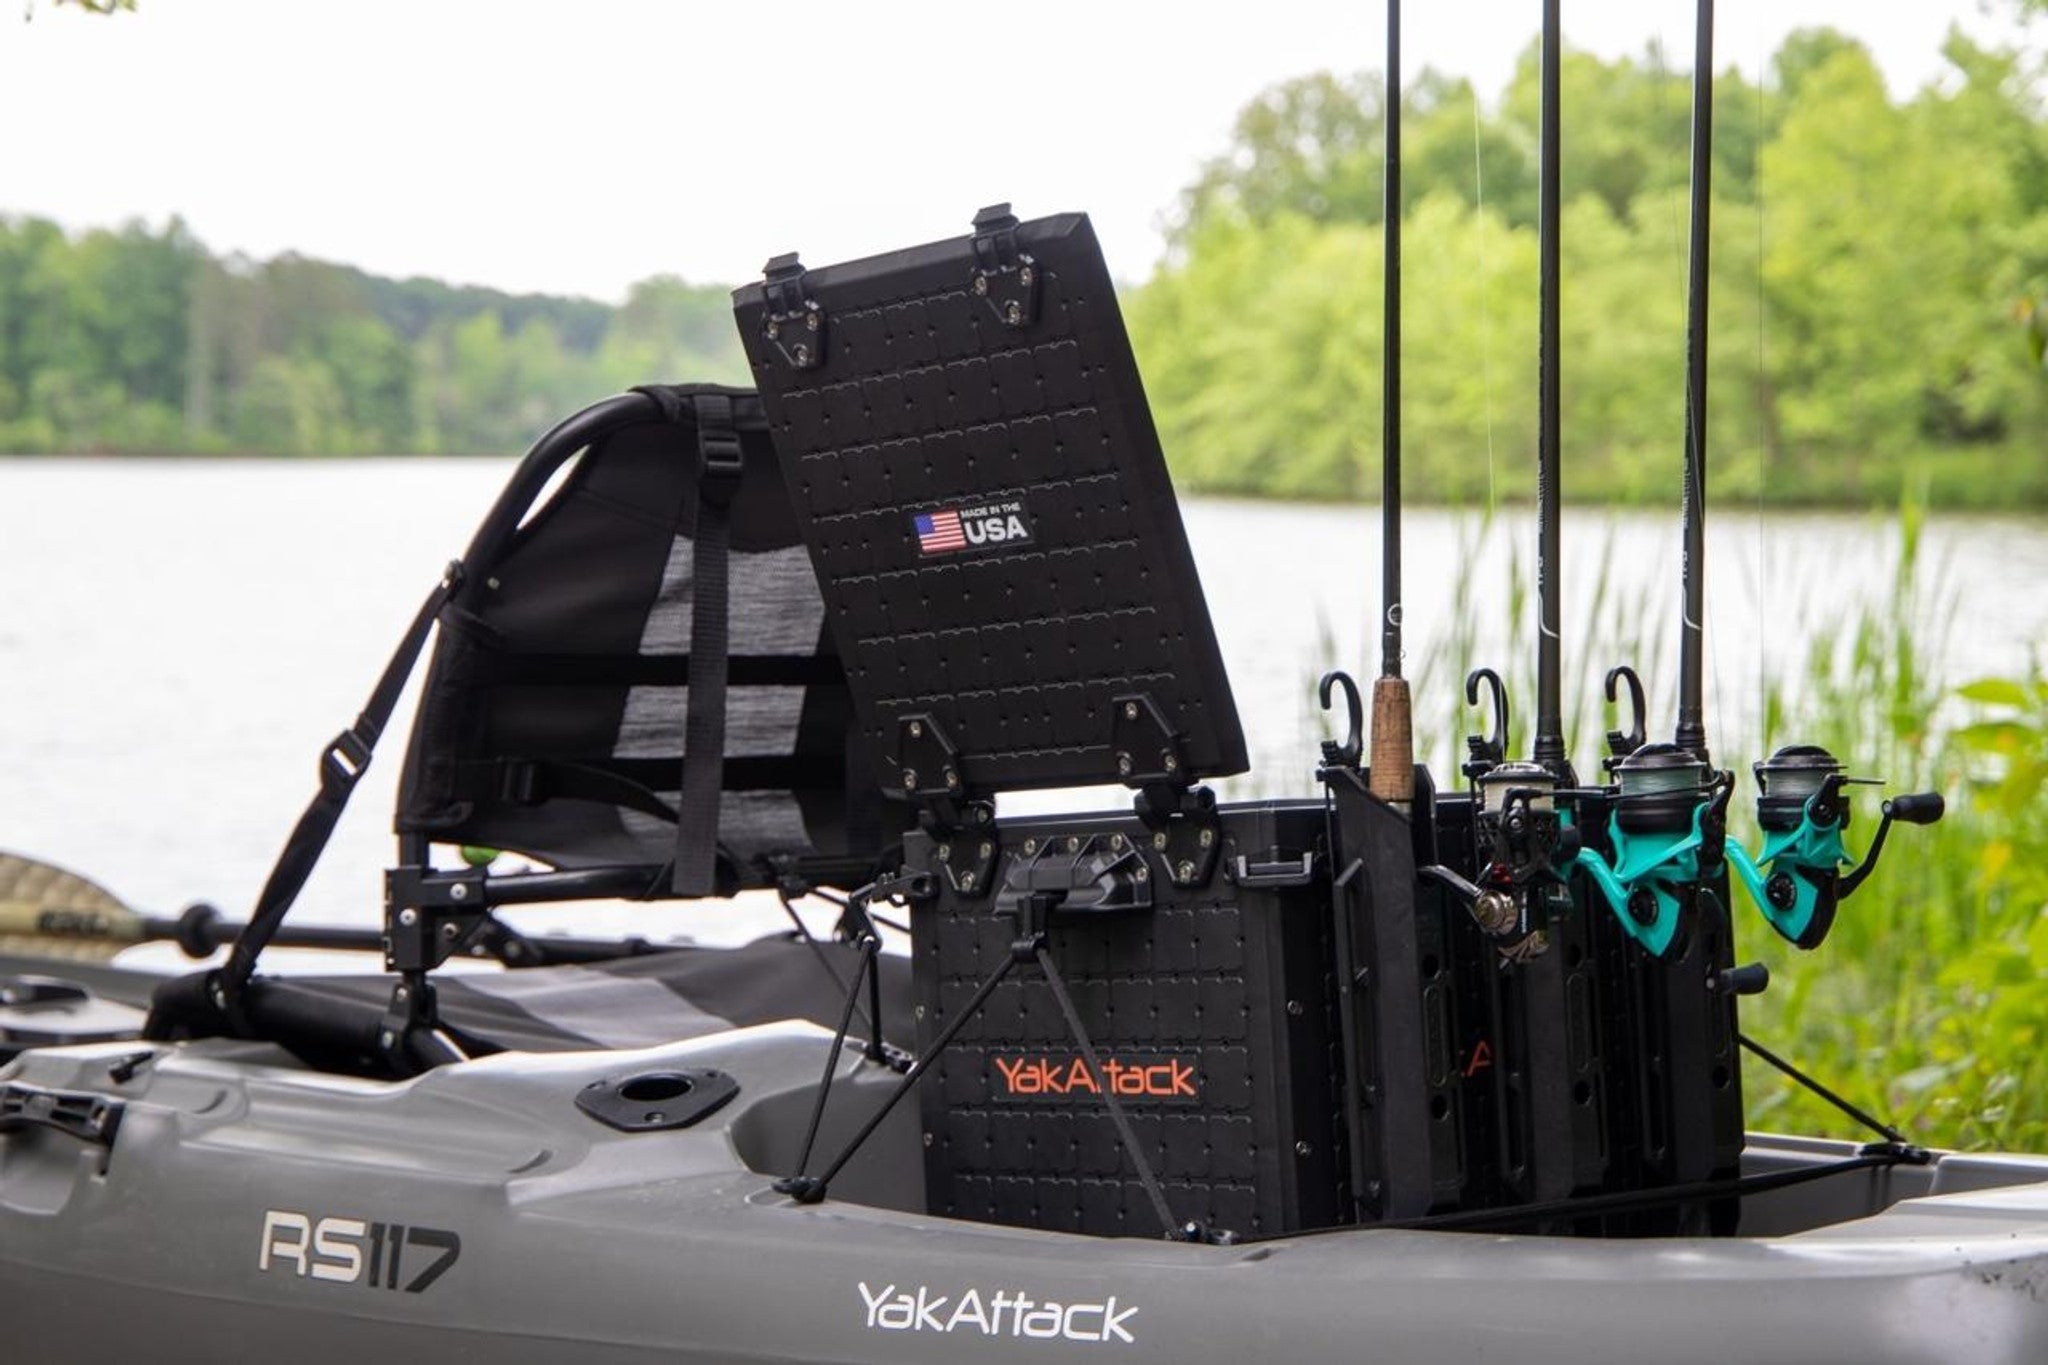 YakAttack, BlackPak Pro Kayak Fishing Crate 16x16